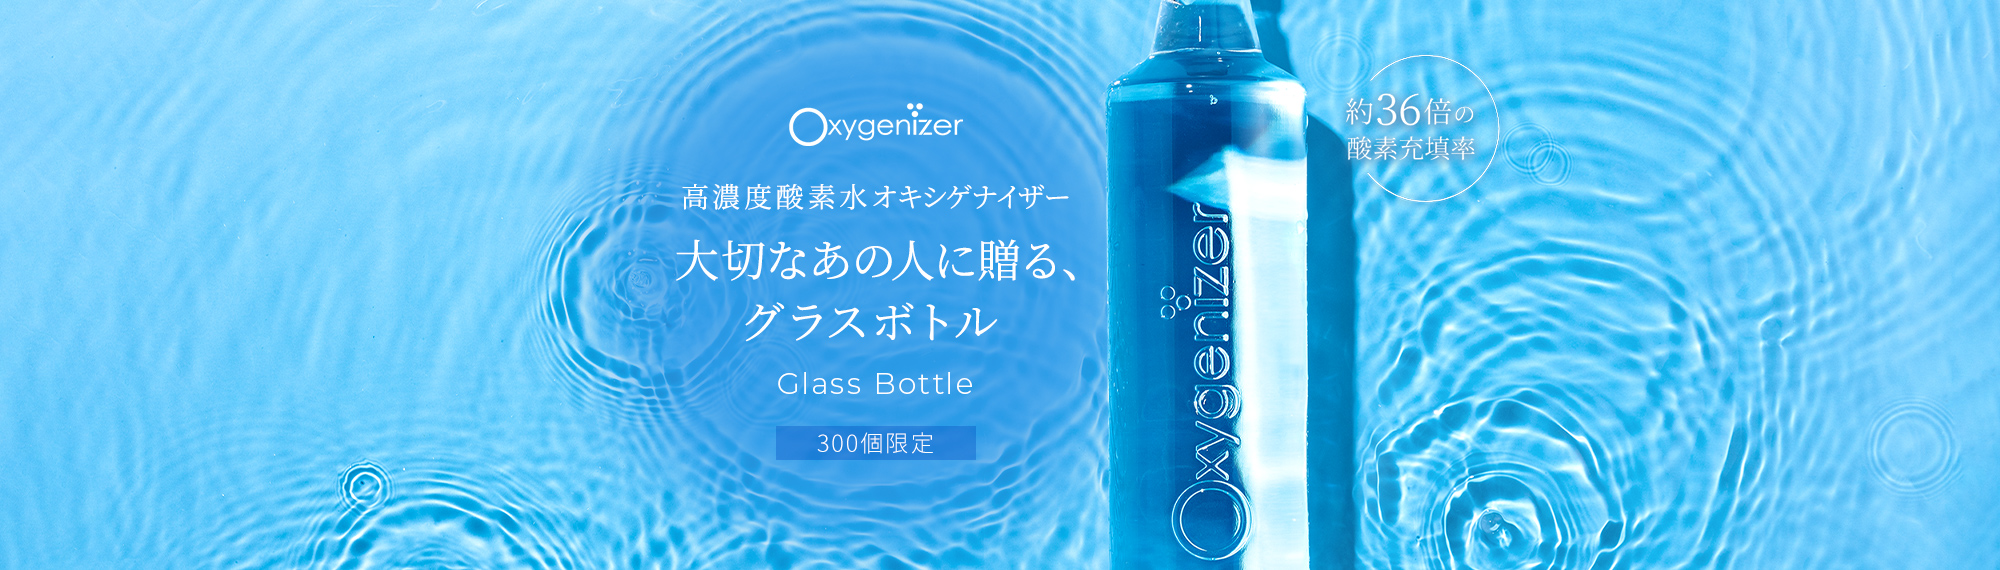 高濃度酸素水オキシゲナイザー 大切なあの人に贈る、グラスボトル